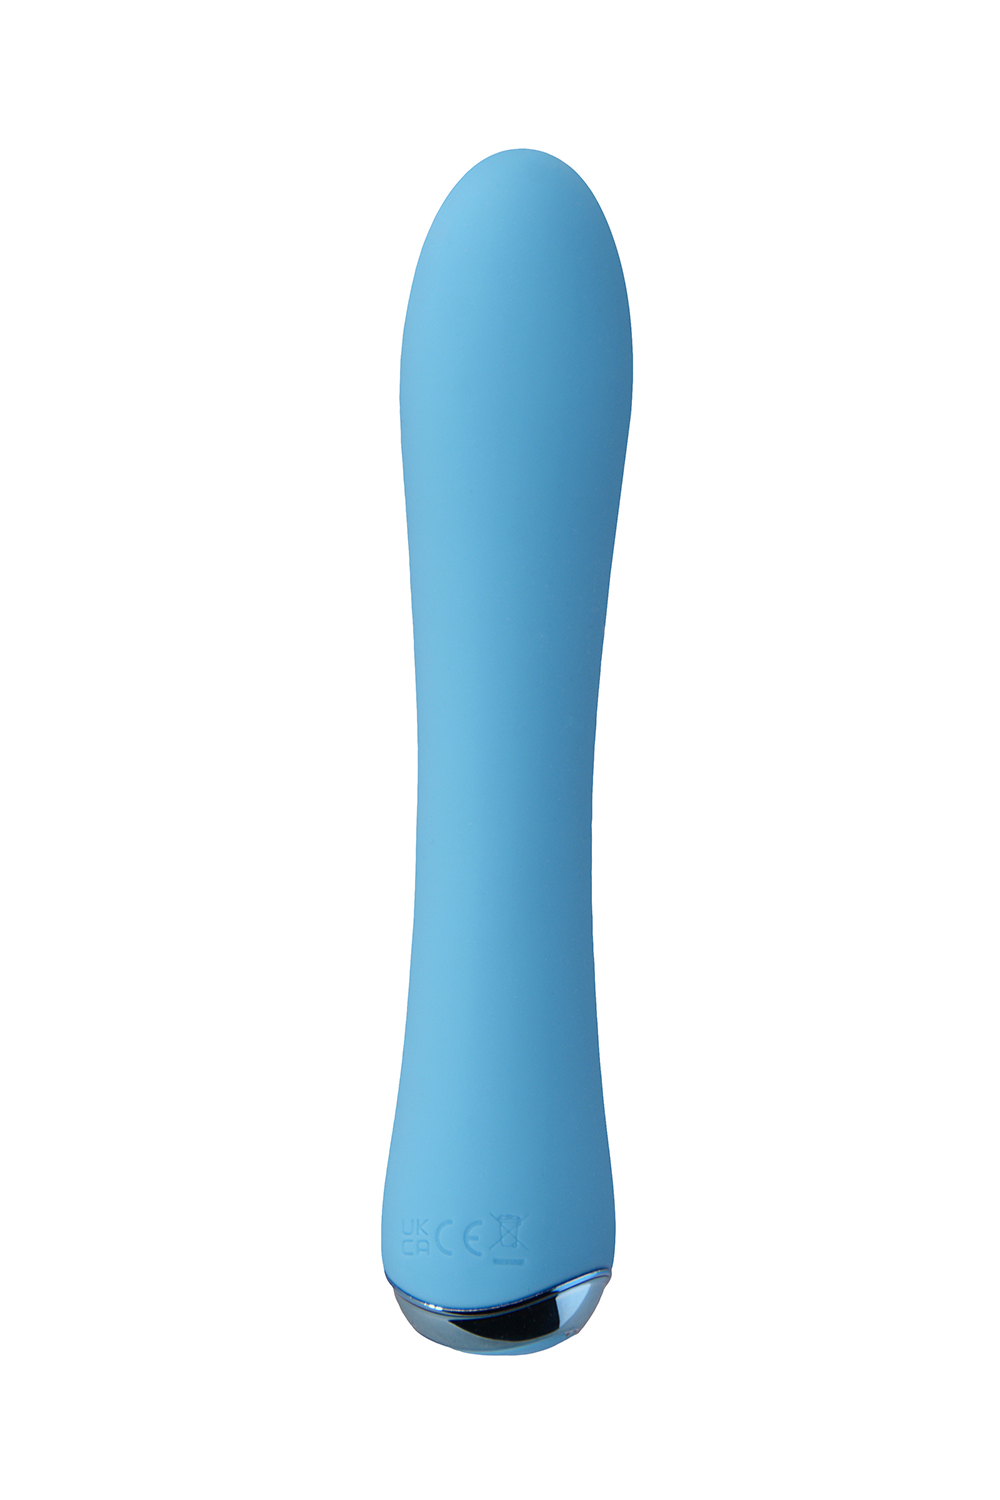 FairyGasm F0009 WowGenie Akcesoria erotyczne wibrator, blue